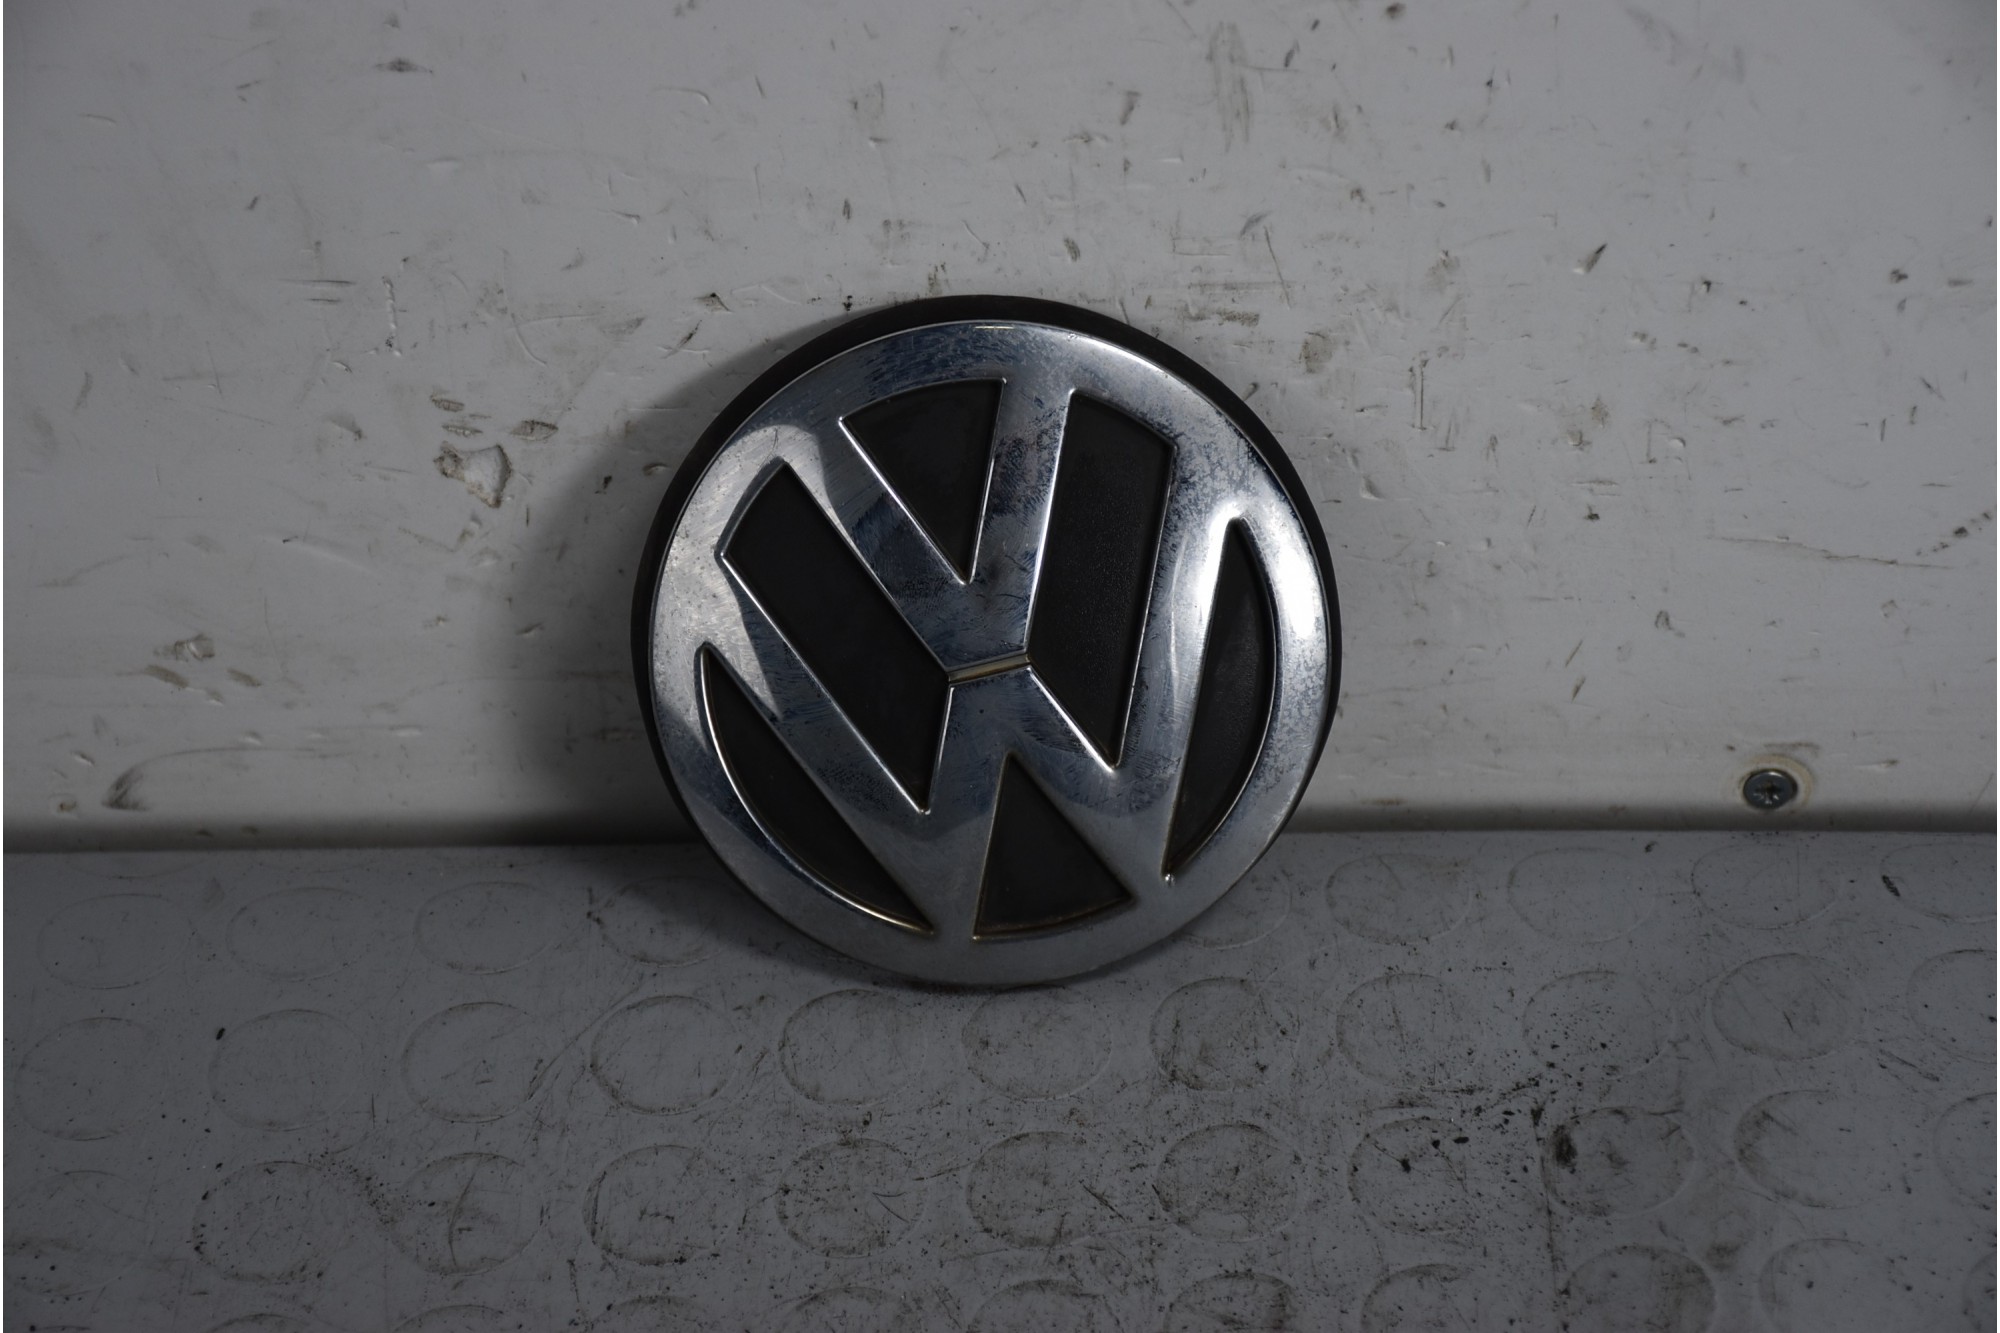 Logo Griglia Anteriore Volkswagen Lupo dal 1998 al 2005 Cod 1j6853630  1638286030368